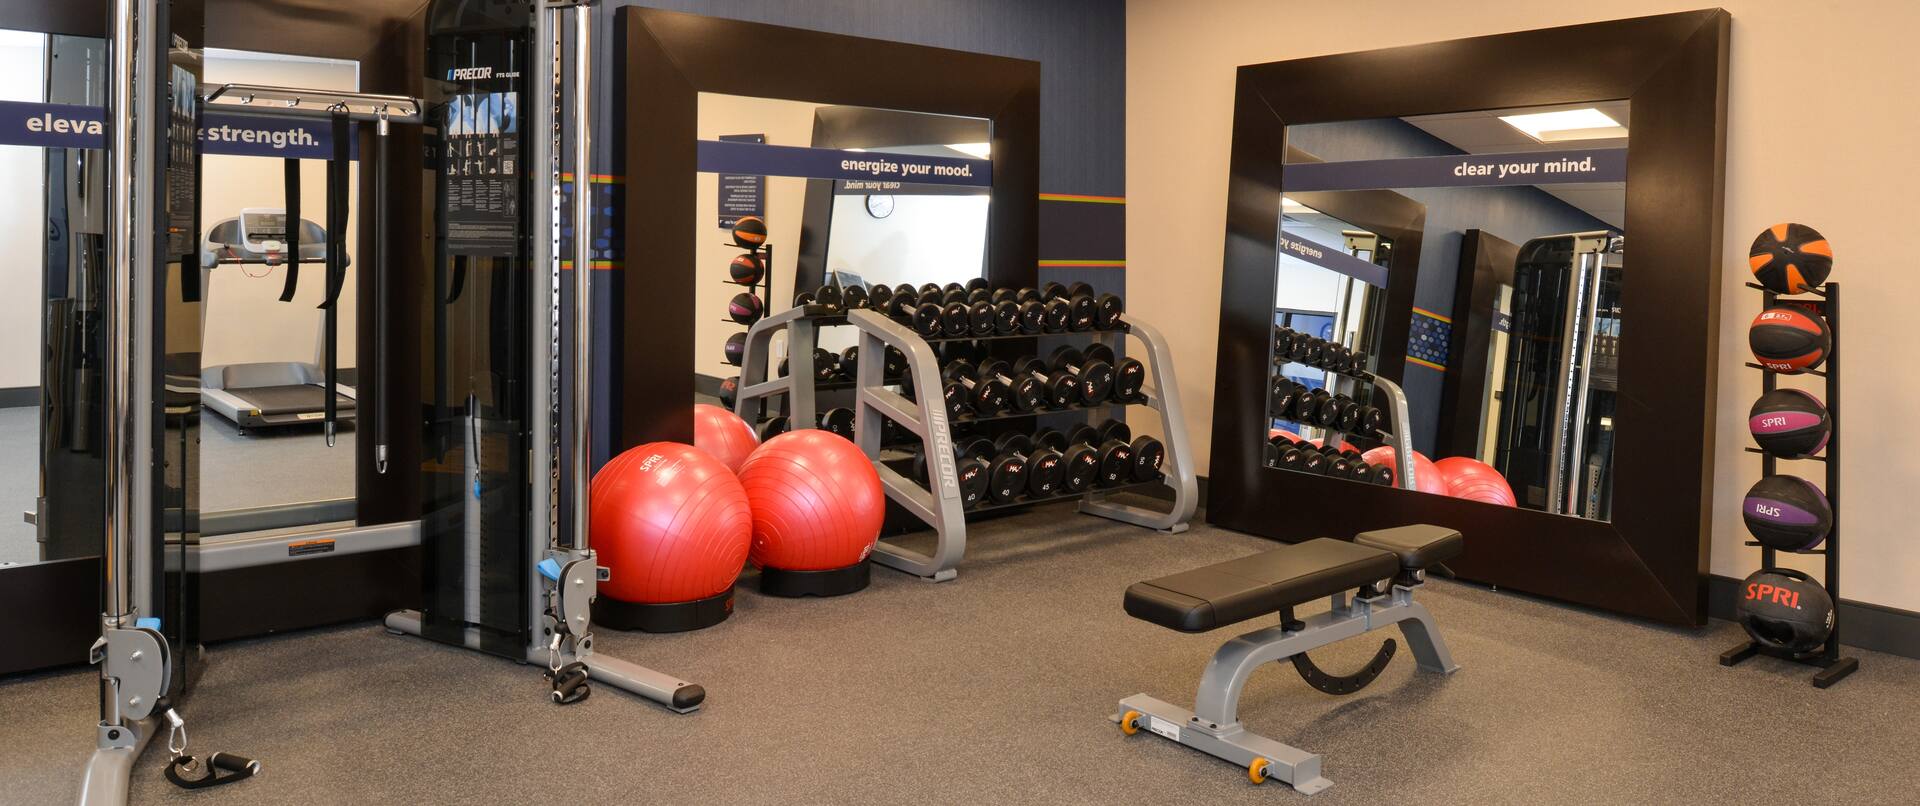 Fitness Center Equipment